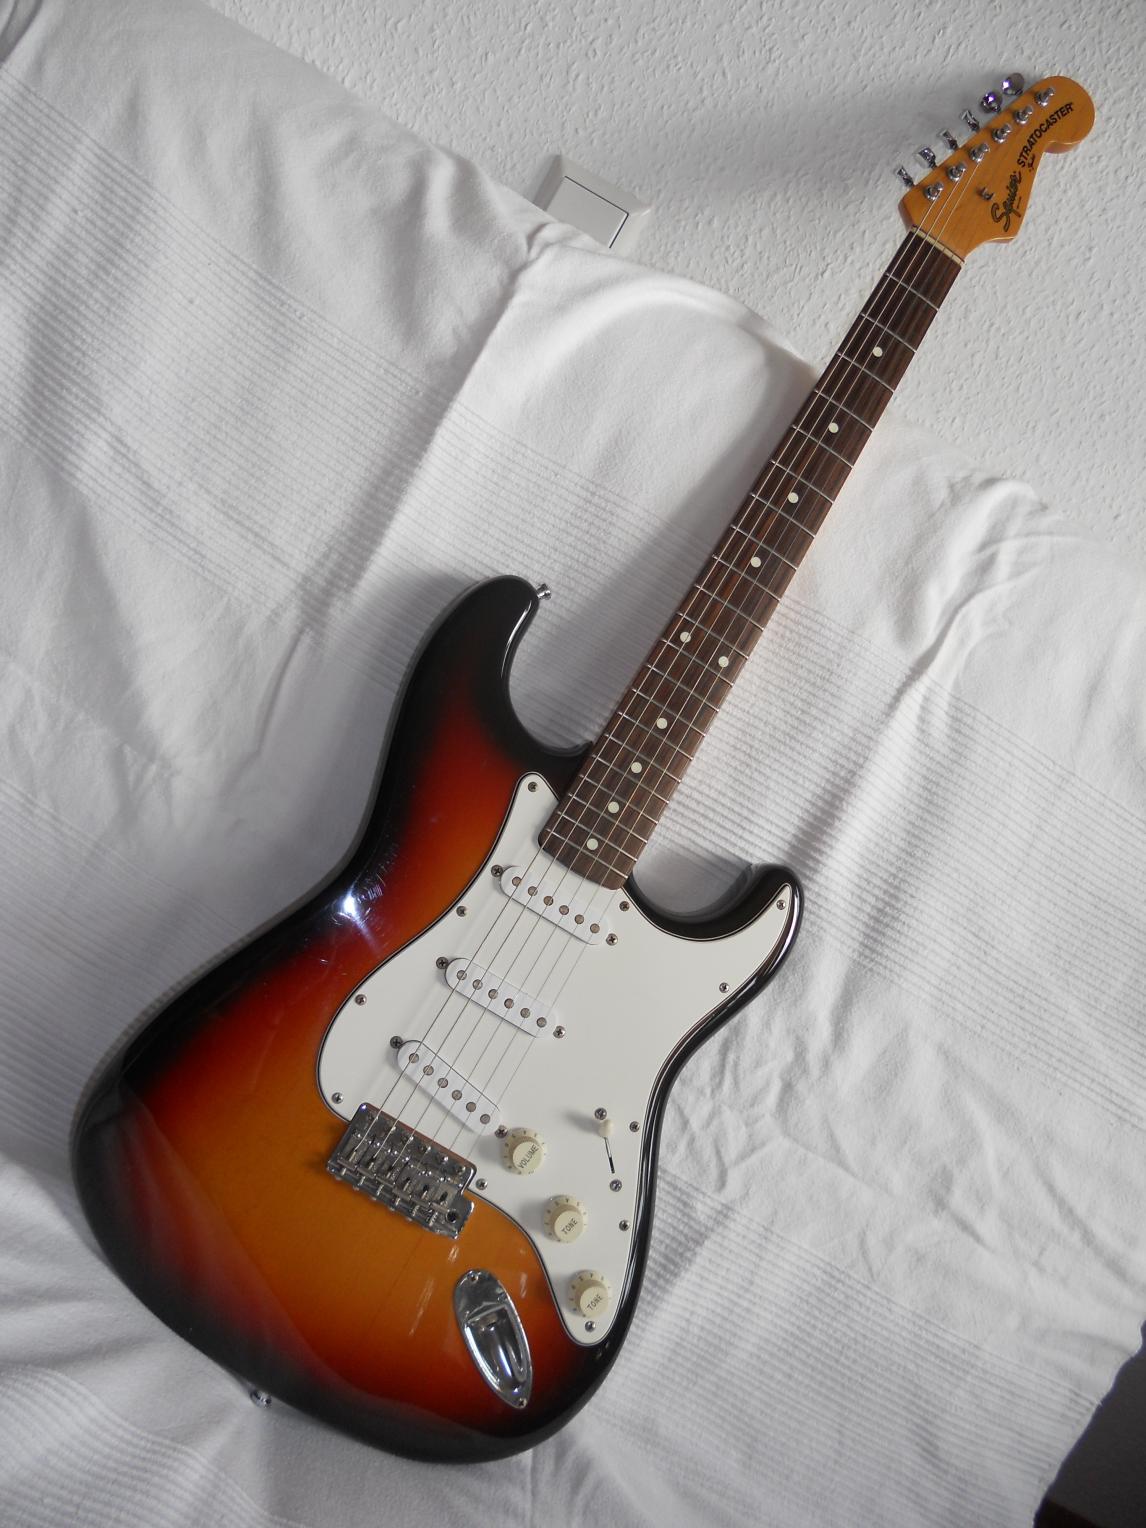 Fender japan Squier A-Serie

sehr schön gemacht, aber ich bin kein sunburst fan
also wieder weg